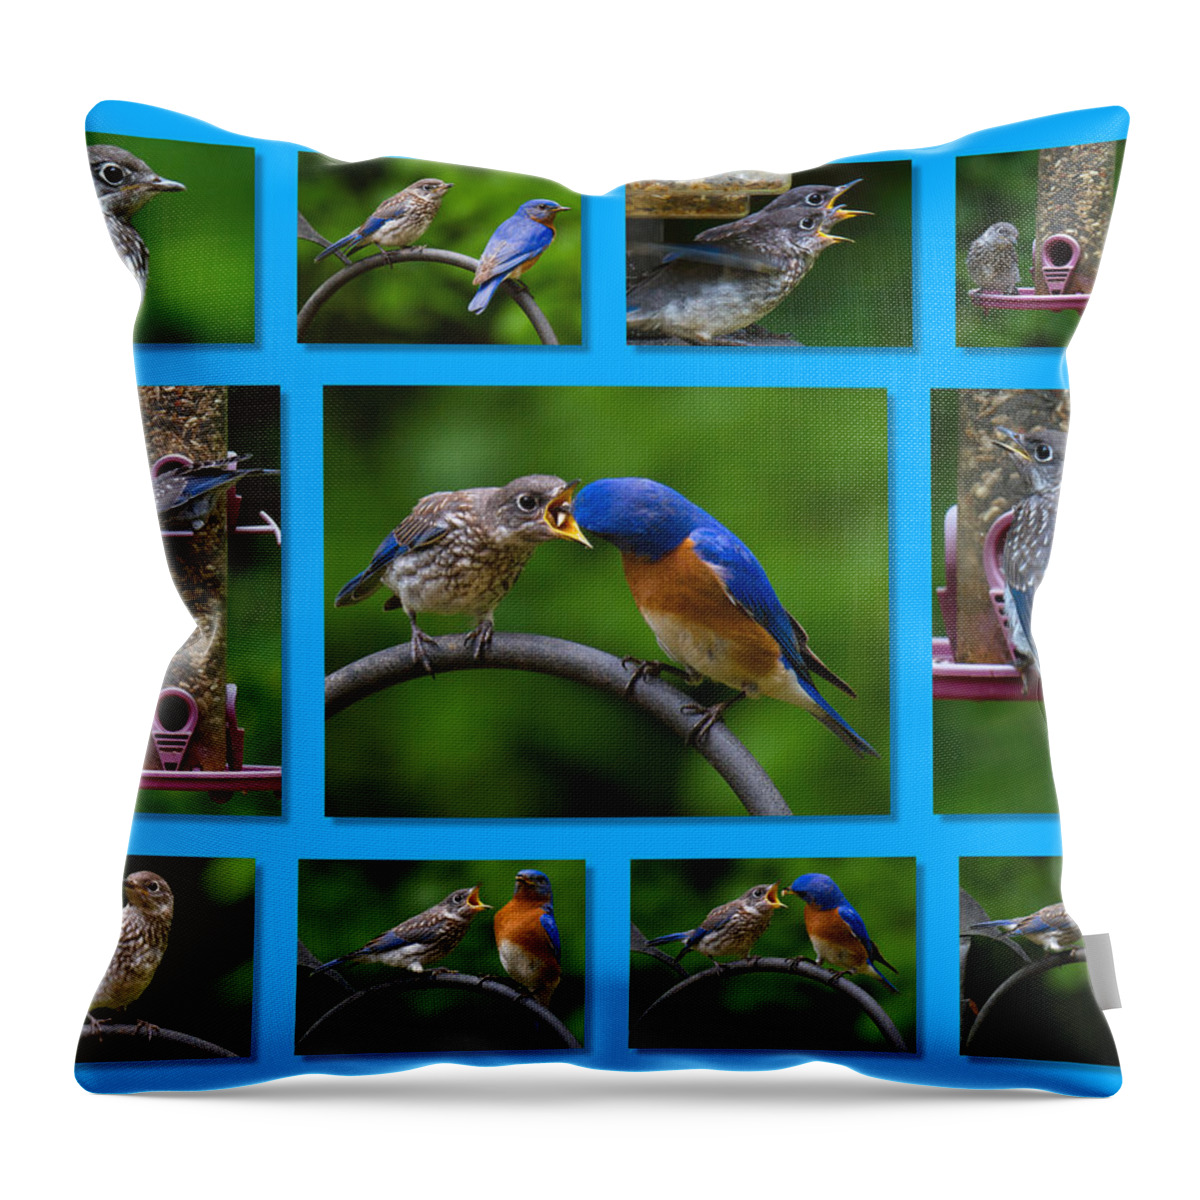 Bluebird Throw Pillow featuring the photograph Bluebird Collage by Robert L Jackson